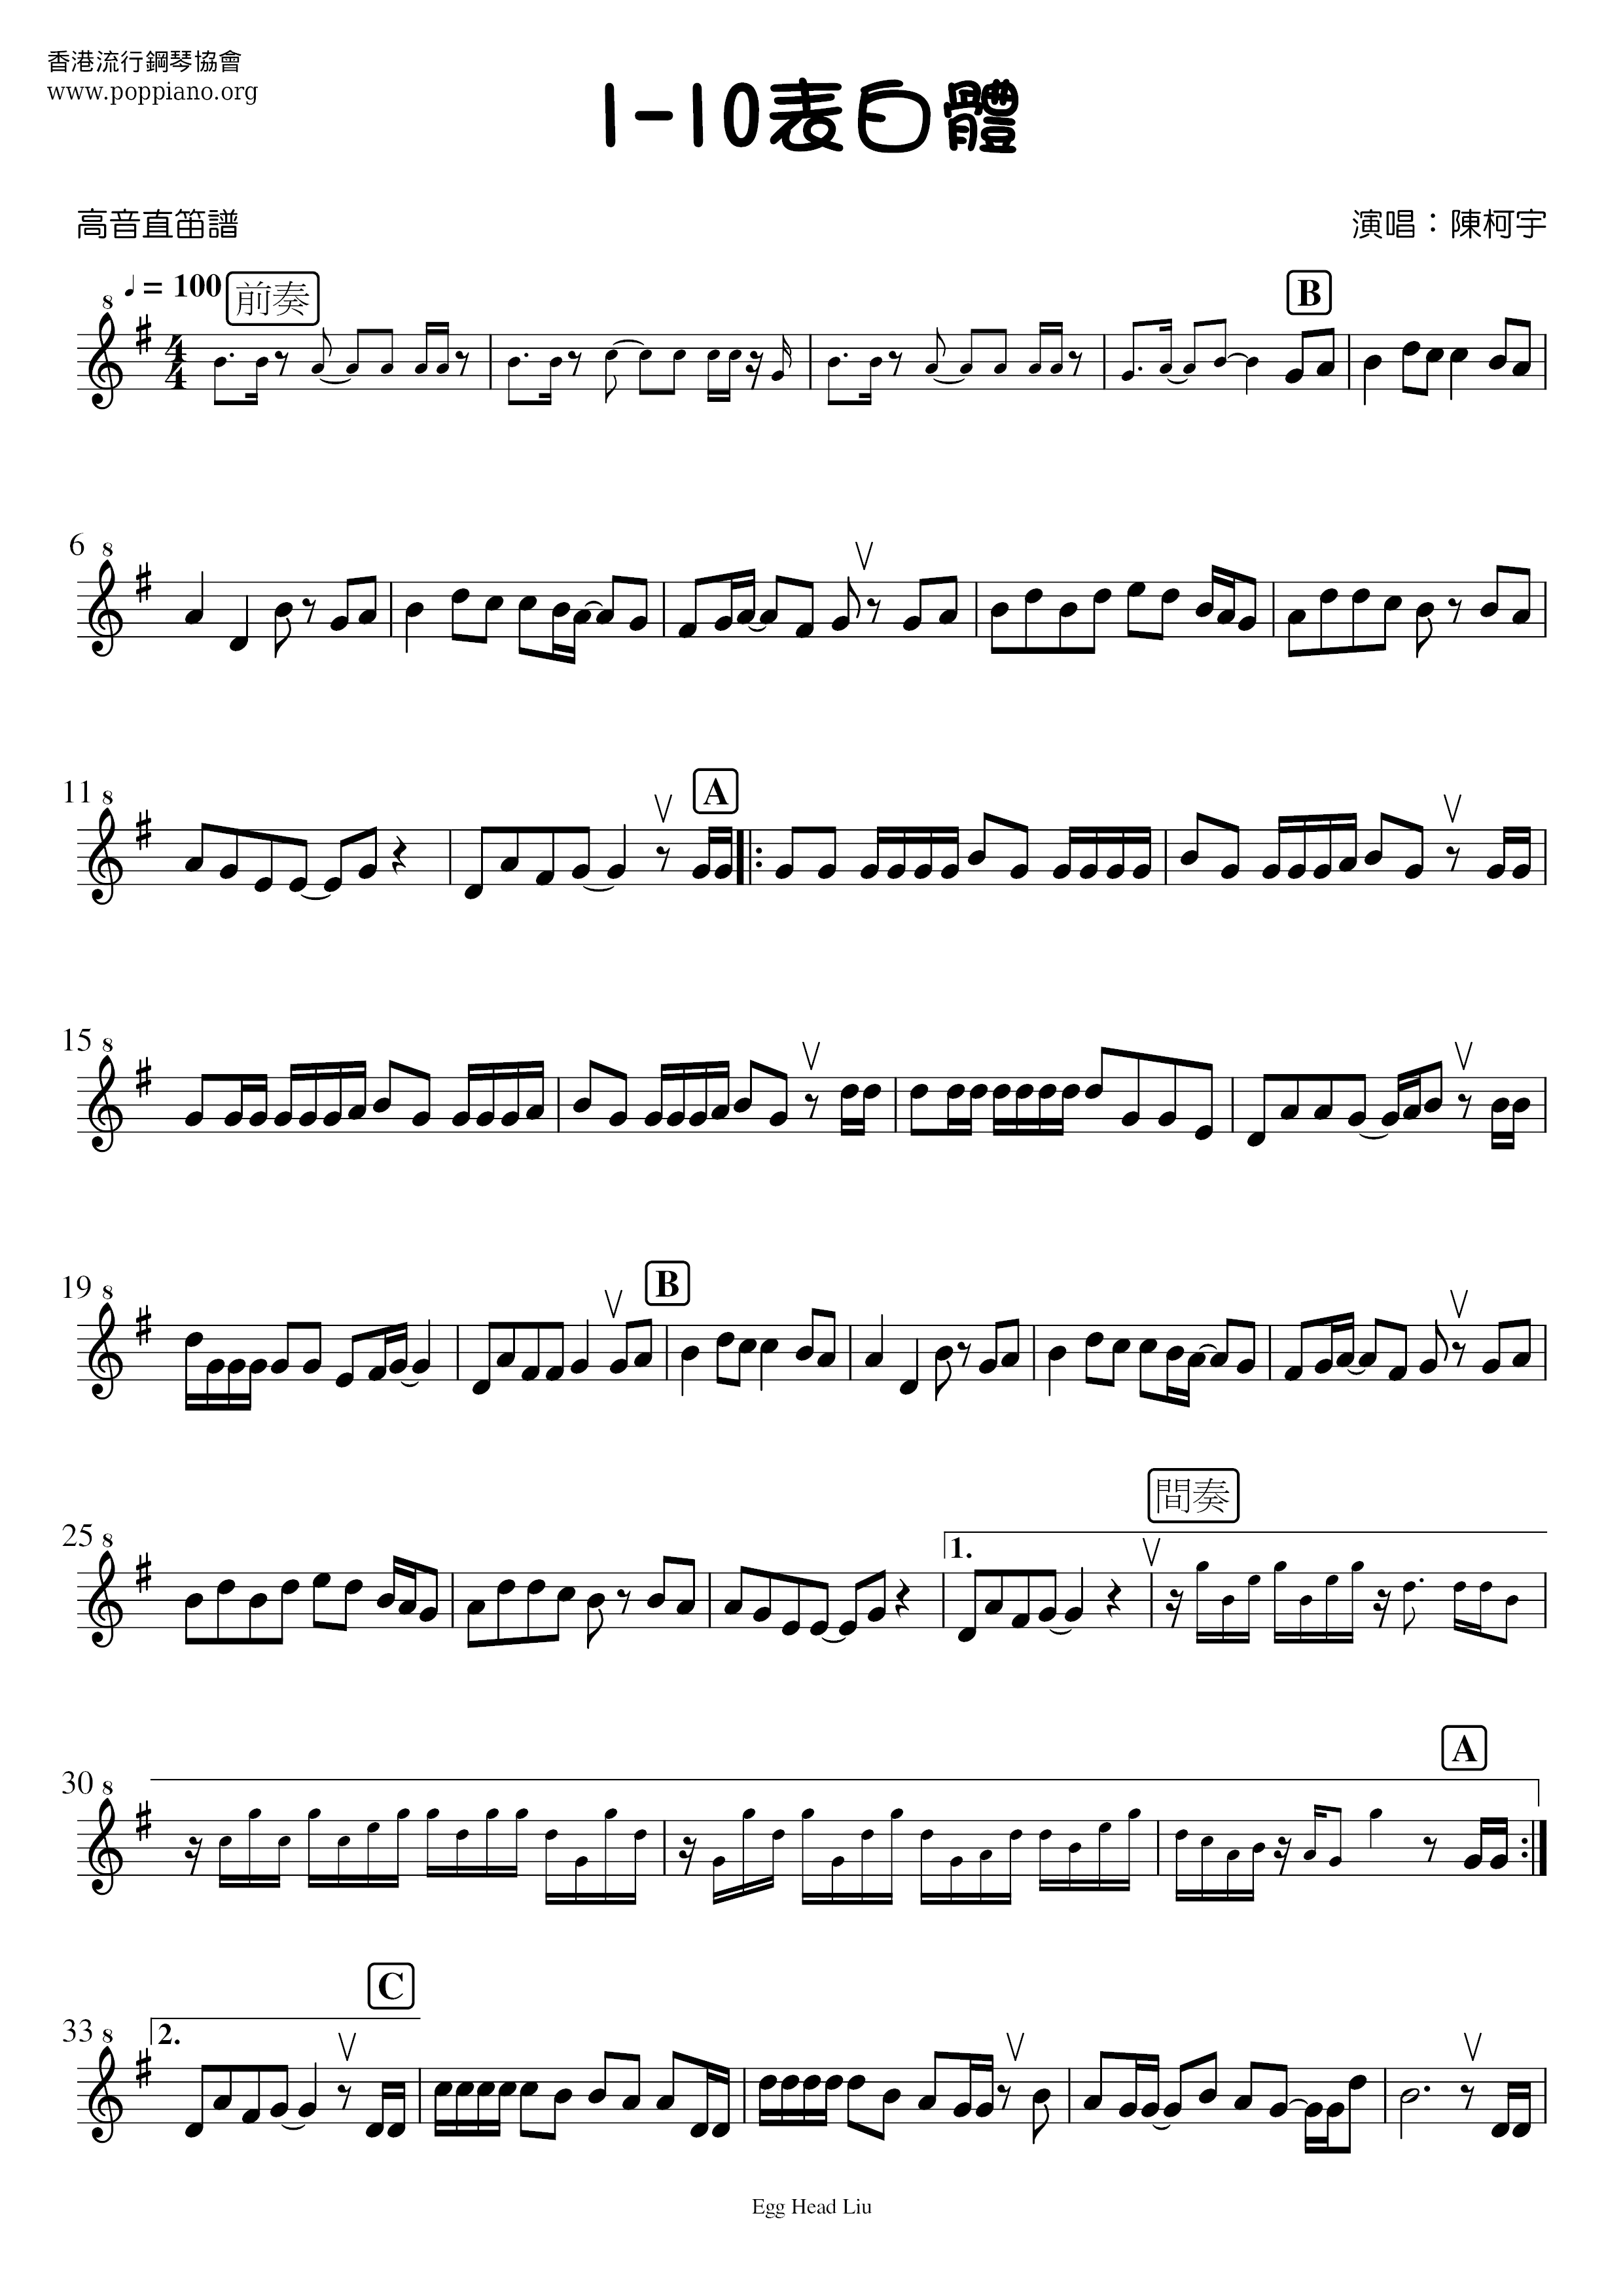 1-10表白体琴谱